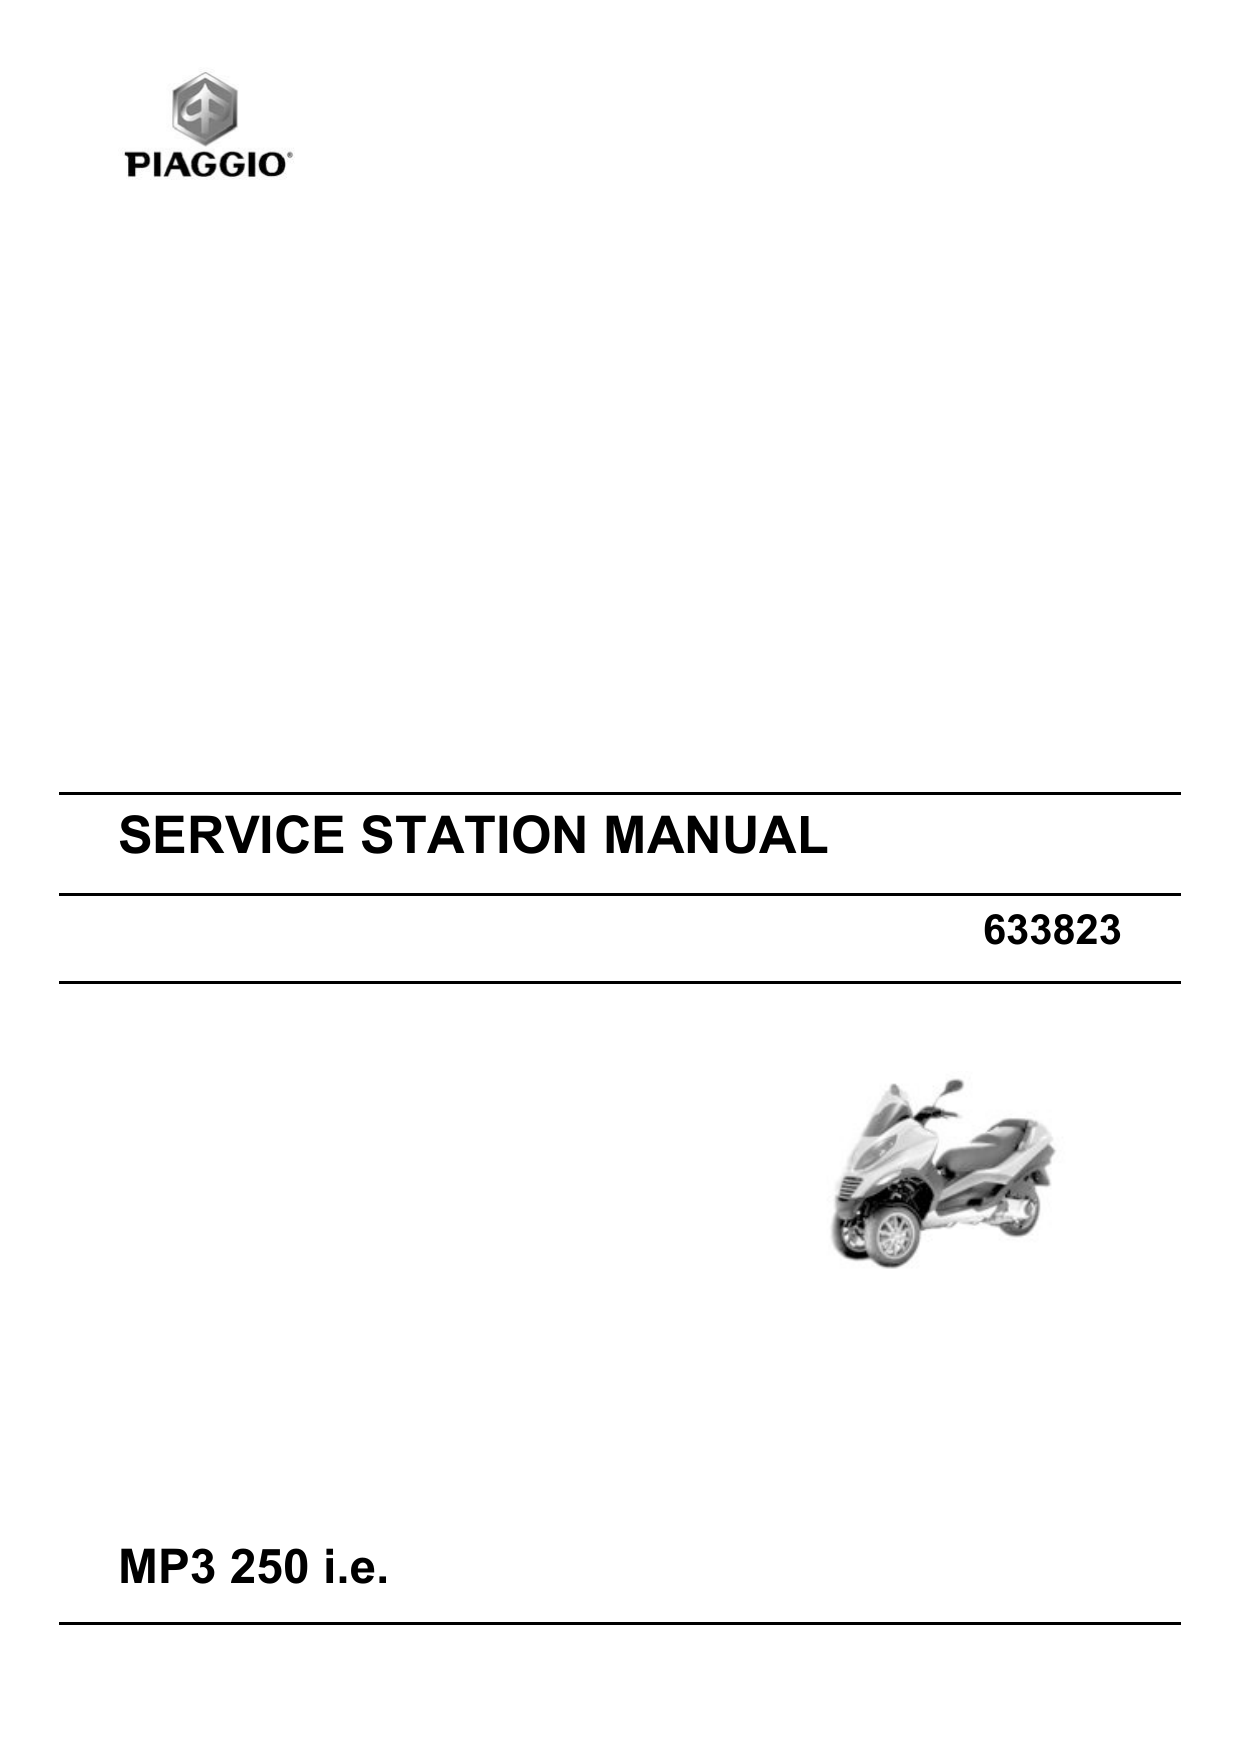 Piaggio MP3 250 IE service manual Preview image 6